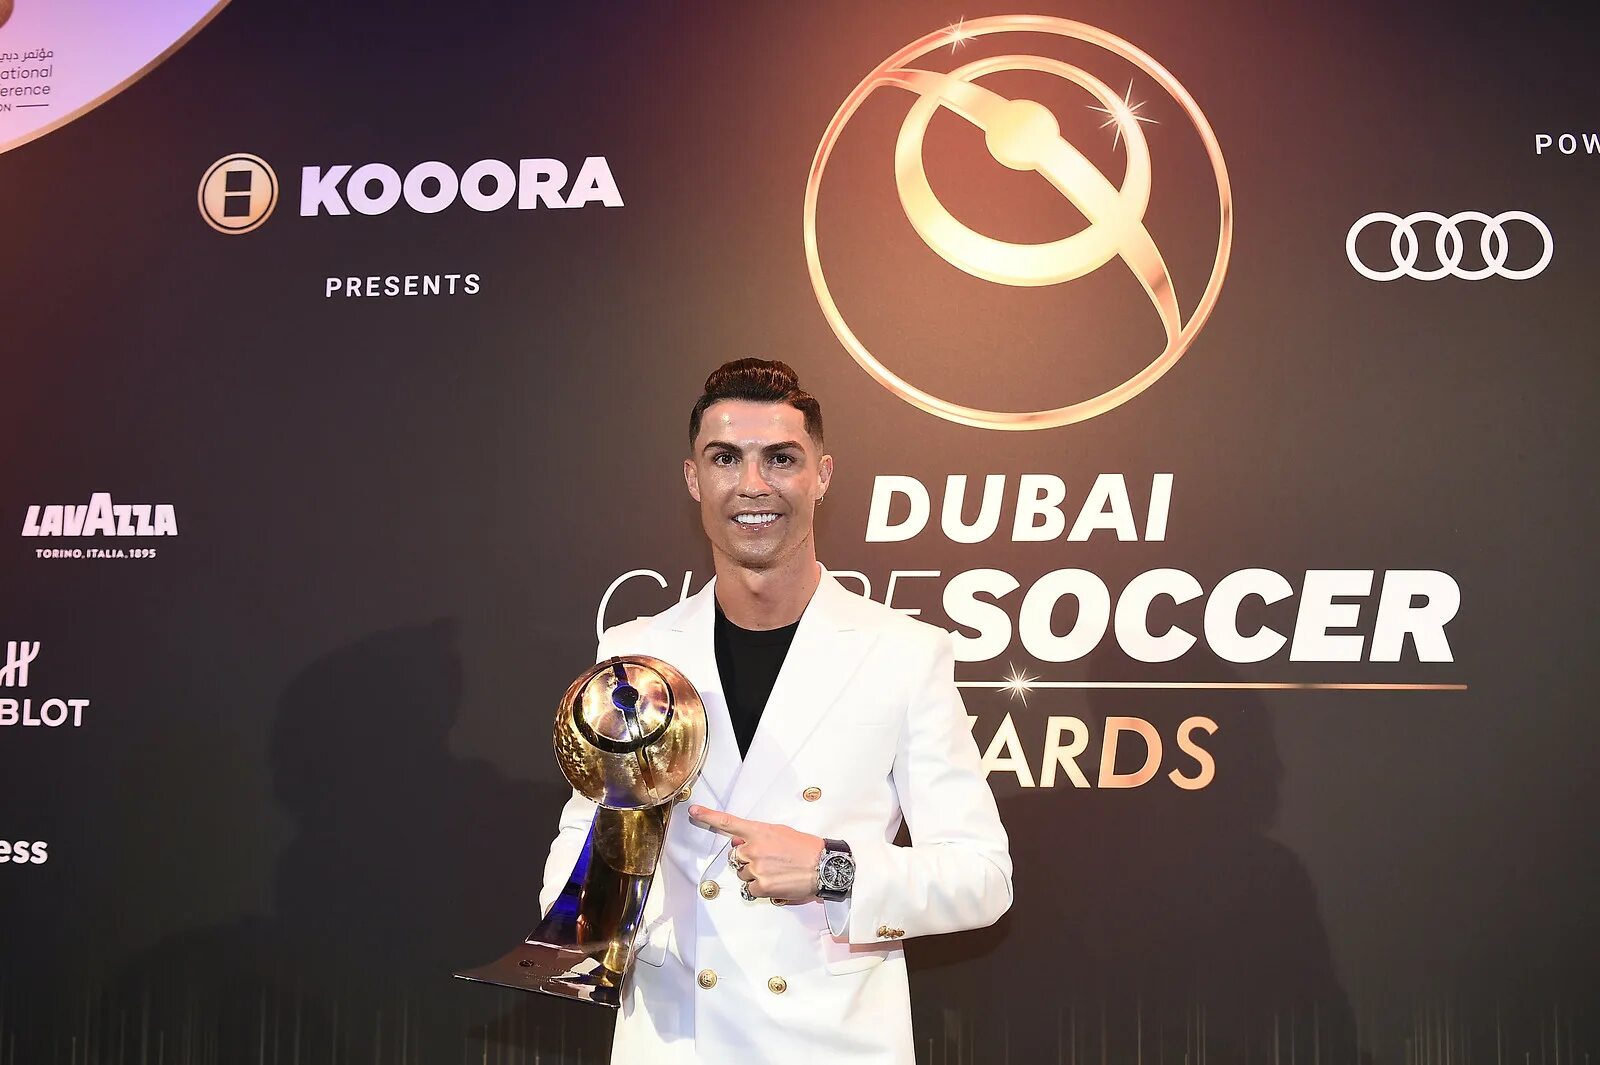 Награда 2019. Globe Soccer Awards Роналду. Награды Кристиано Роналдо. Криштиану Роналду Глоб СОККЕР эуордс. Роналду Award 2021.